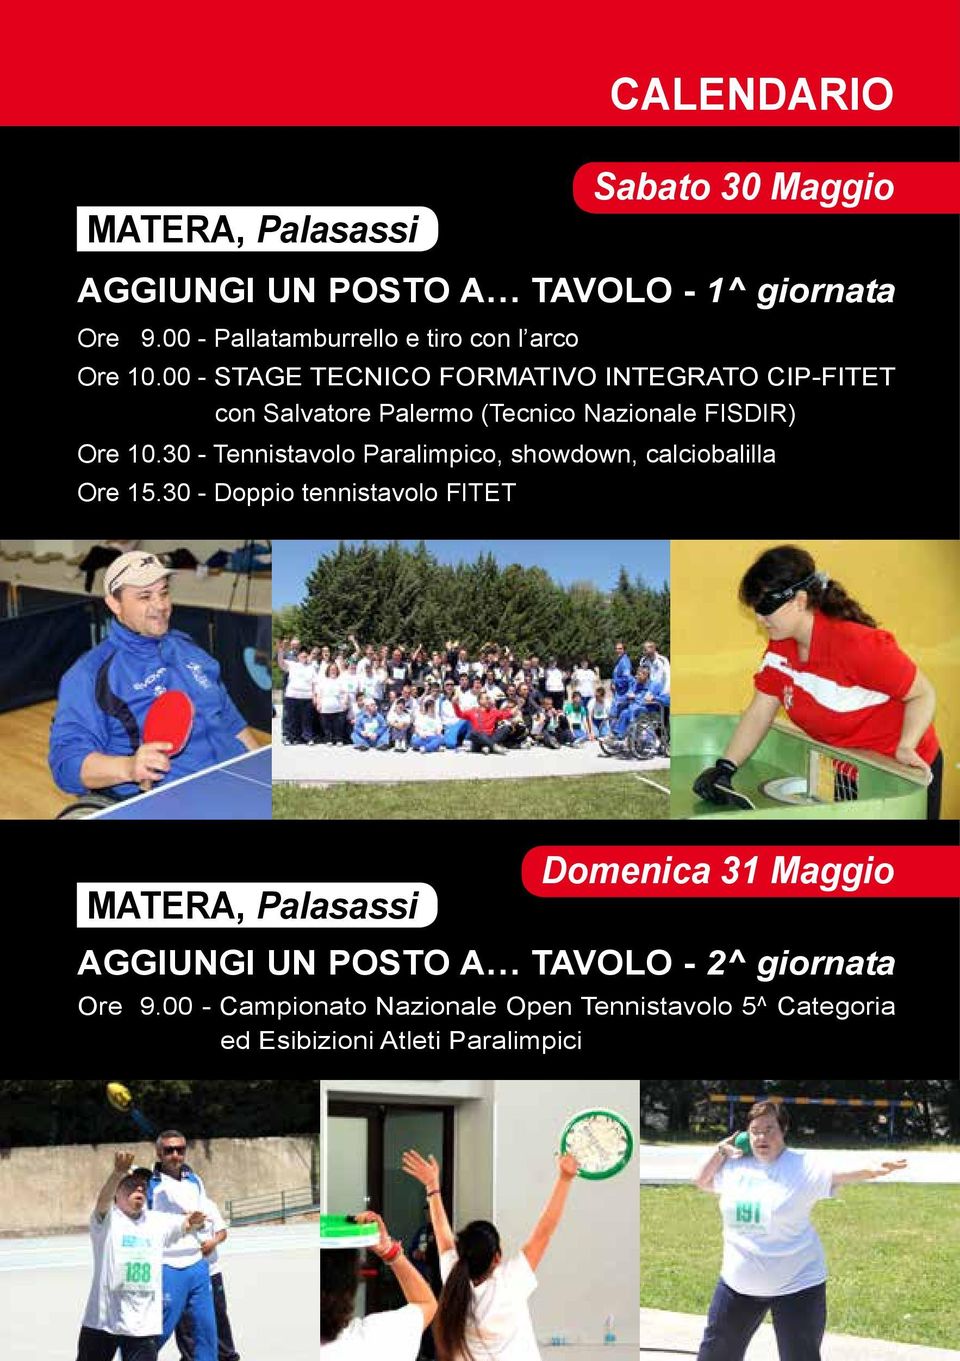 00 - STAGE TECNICO FORMATIVO INTEGRATO CIP-FITET con Salvatore Palermo (Tecnico Nazionale FISDIR) Ore 10.